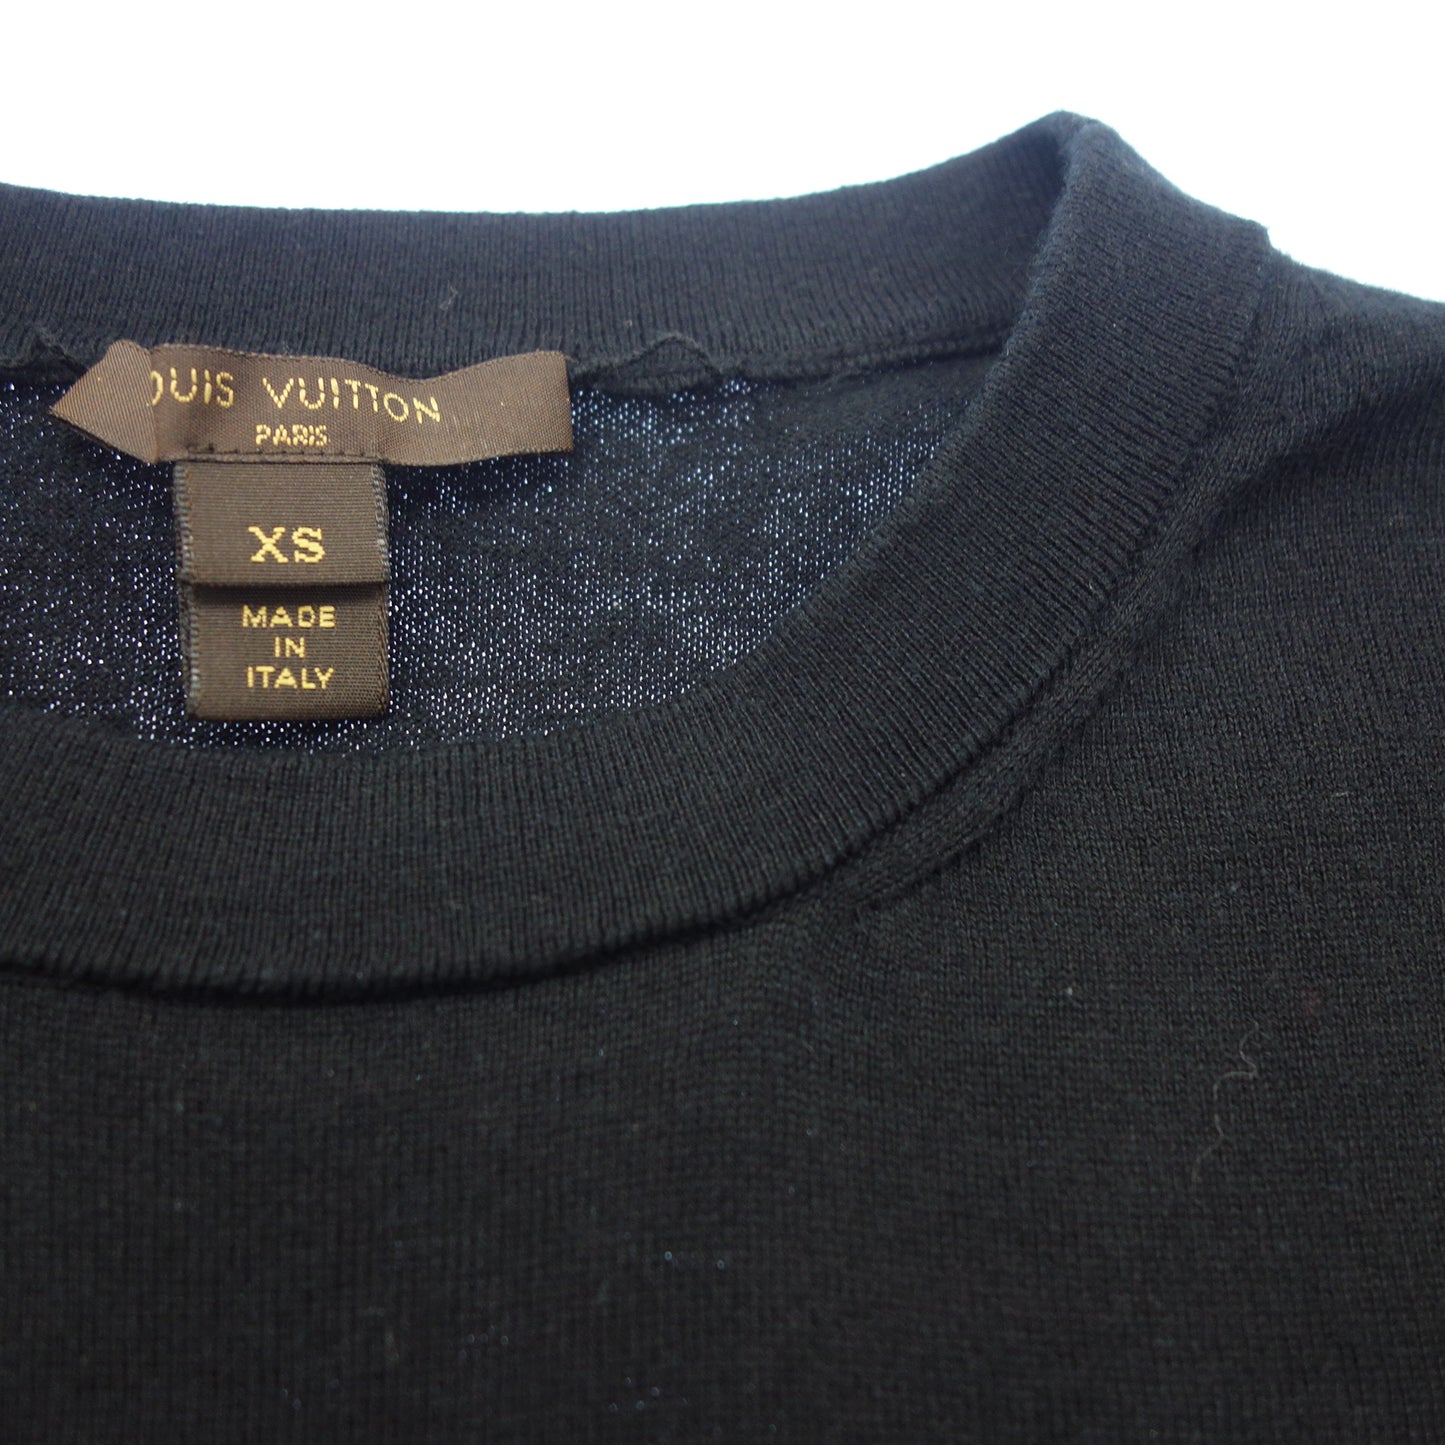 Good condition ◆Louis Vuitton T-shirt 13SS Collar Bijoux Cotton Ladies Black Size XS LOUIS VUITTON [AFB3] 